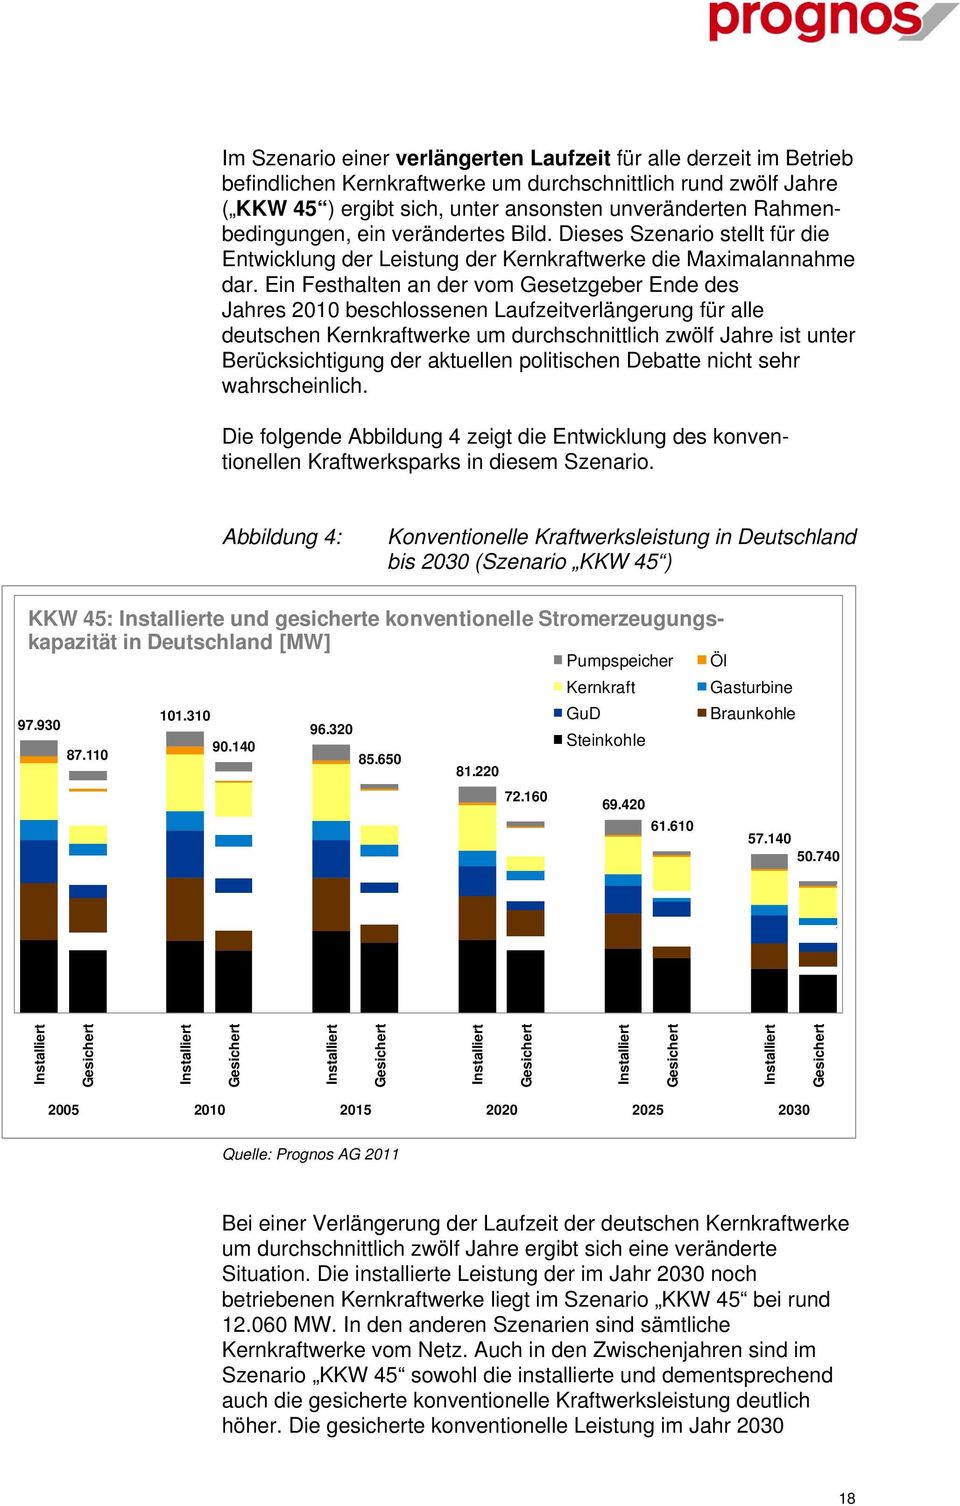 Ein Festhalten an der vom Gesetzgeber Ende des Jahres 2010 beschlossenen Laufzeitverlängerung für alle deutschen Kernkraftwerke um durchschnittlich zwölf Jahre ist unter Berücksichtigung der